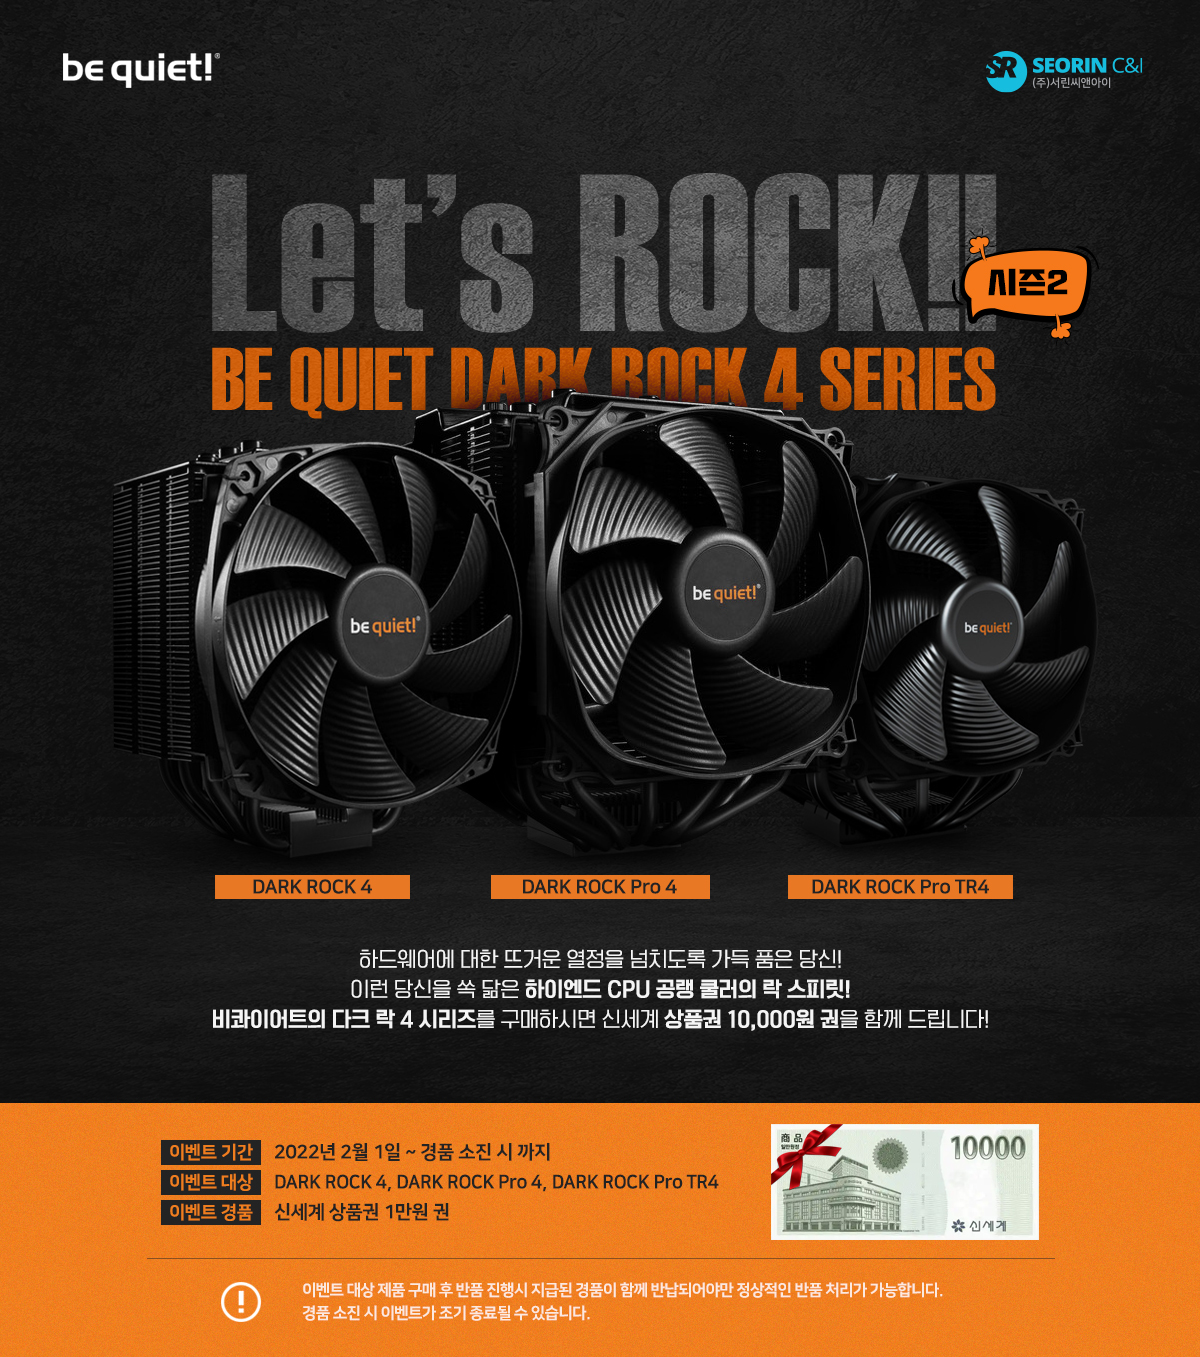 시즌2! Let's ROCK! 비콰이어트 다크 락 4 시리즈 구매자 대상 1만원 신세계 상품권 증정 이벤트!